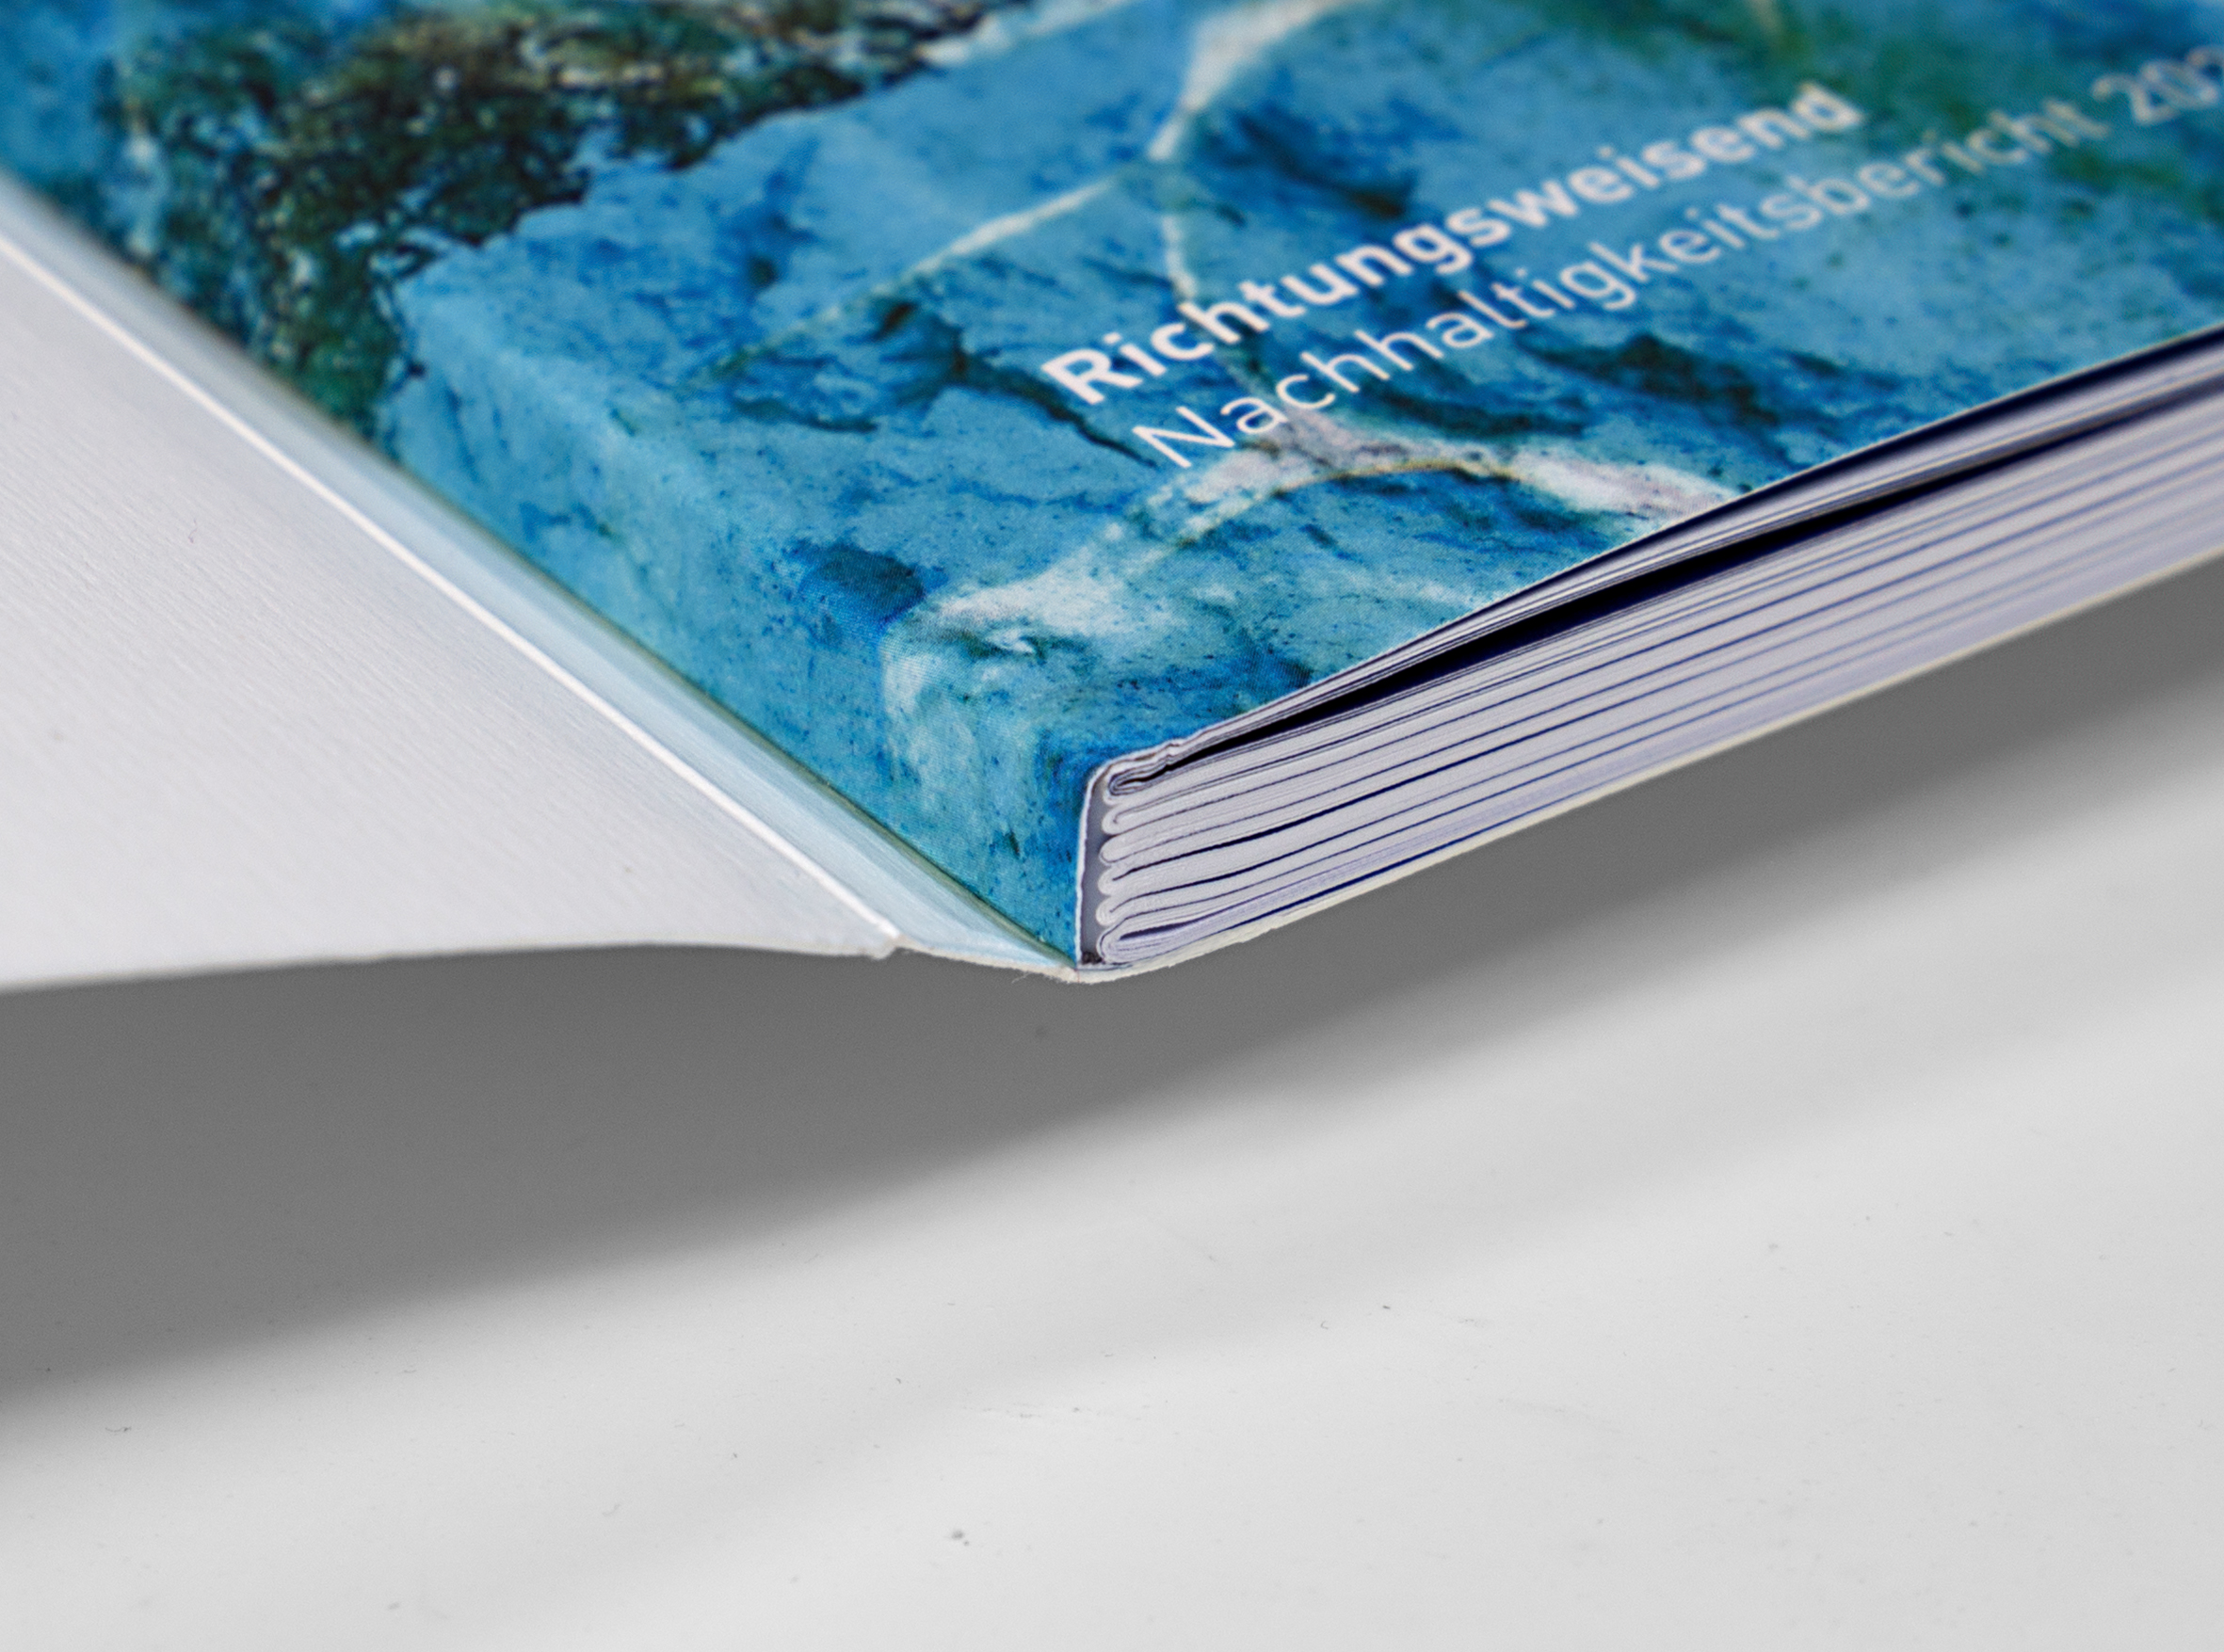 Detailaufnahme der Schweizer Broschur. Das Cover ist weiß, der Innenumschlag erinnert an einen türkisfarbenen Meeresgrund mit schimmerndem Lichteinfall. Darauf ist weiß das Wort "Richtungsweisend" zu lesen